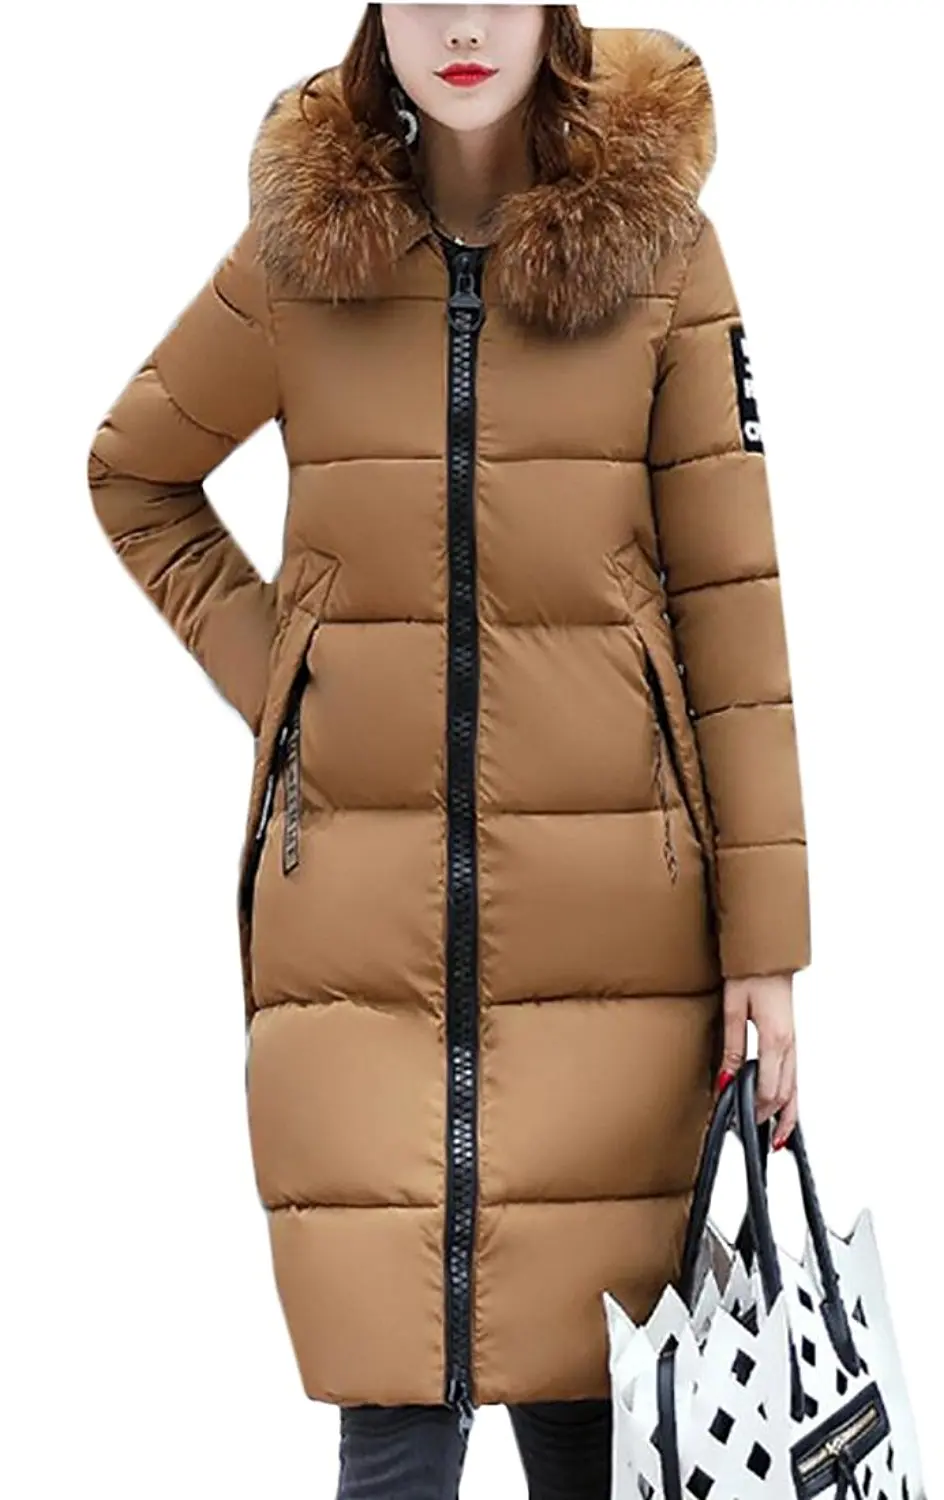 Cheap Womens Puffer Jacket Fur Hood, find Womens Puffer Jacket Fur Hood